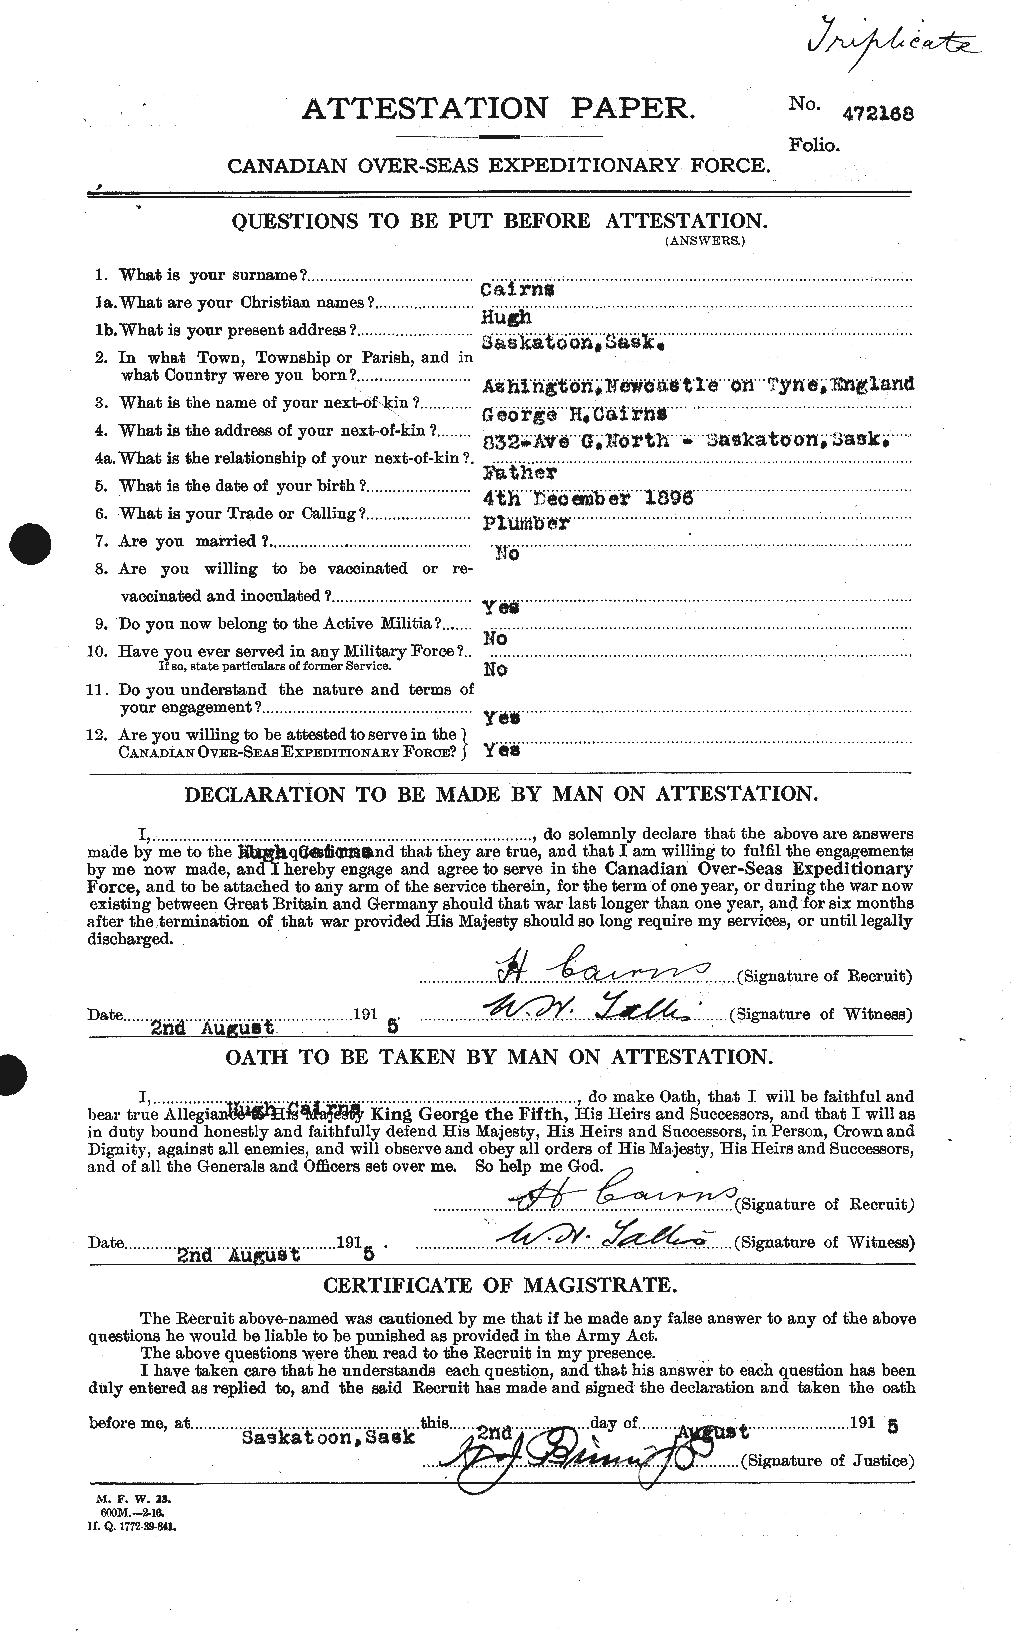 Dossiers du Personnel de la Première Guerre mondiale - CEC 206302a